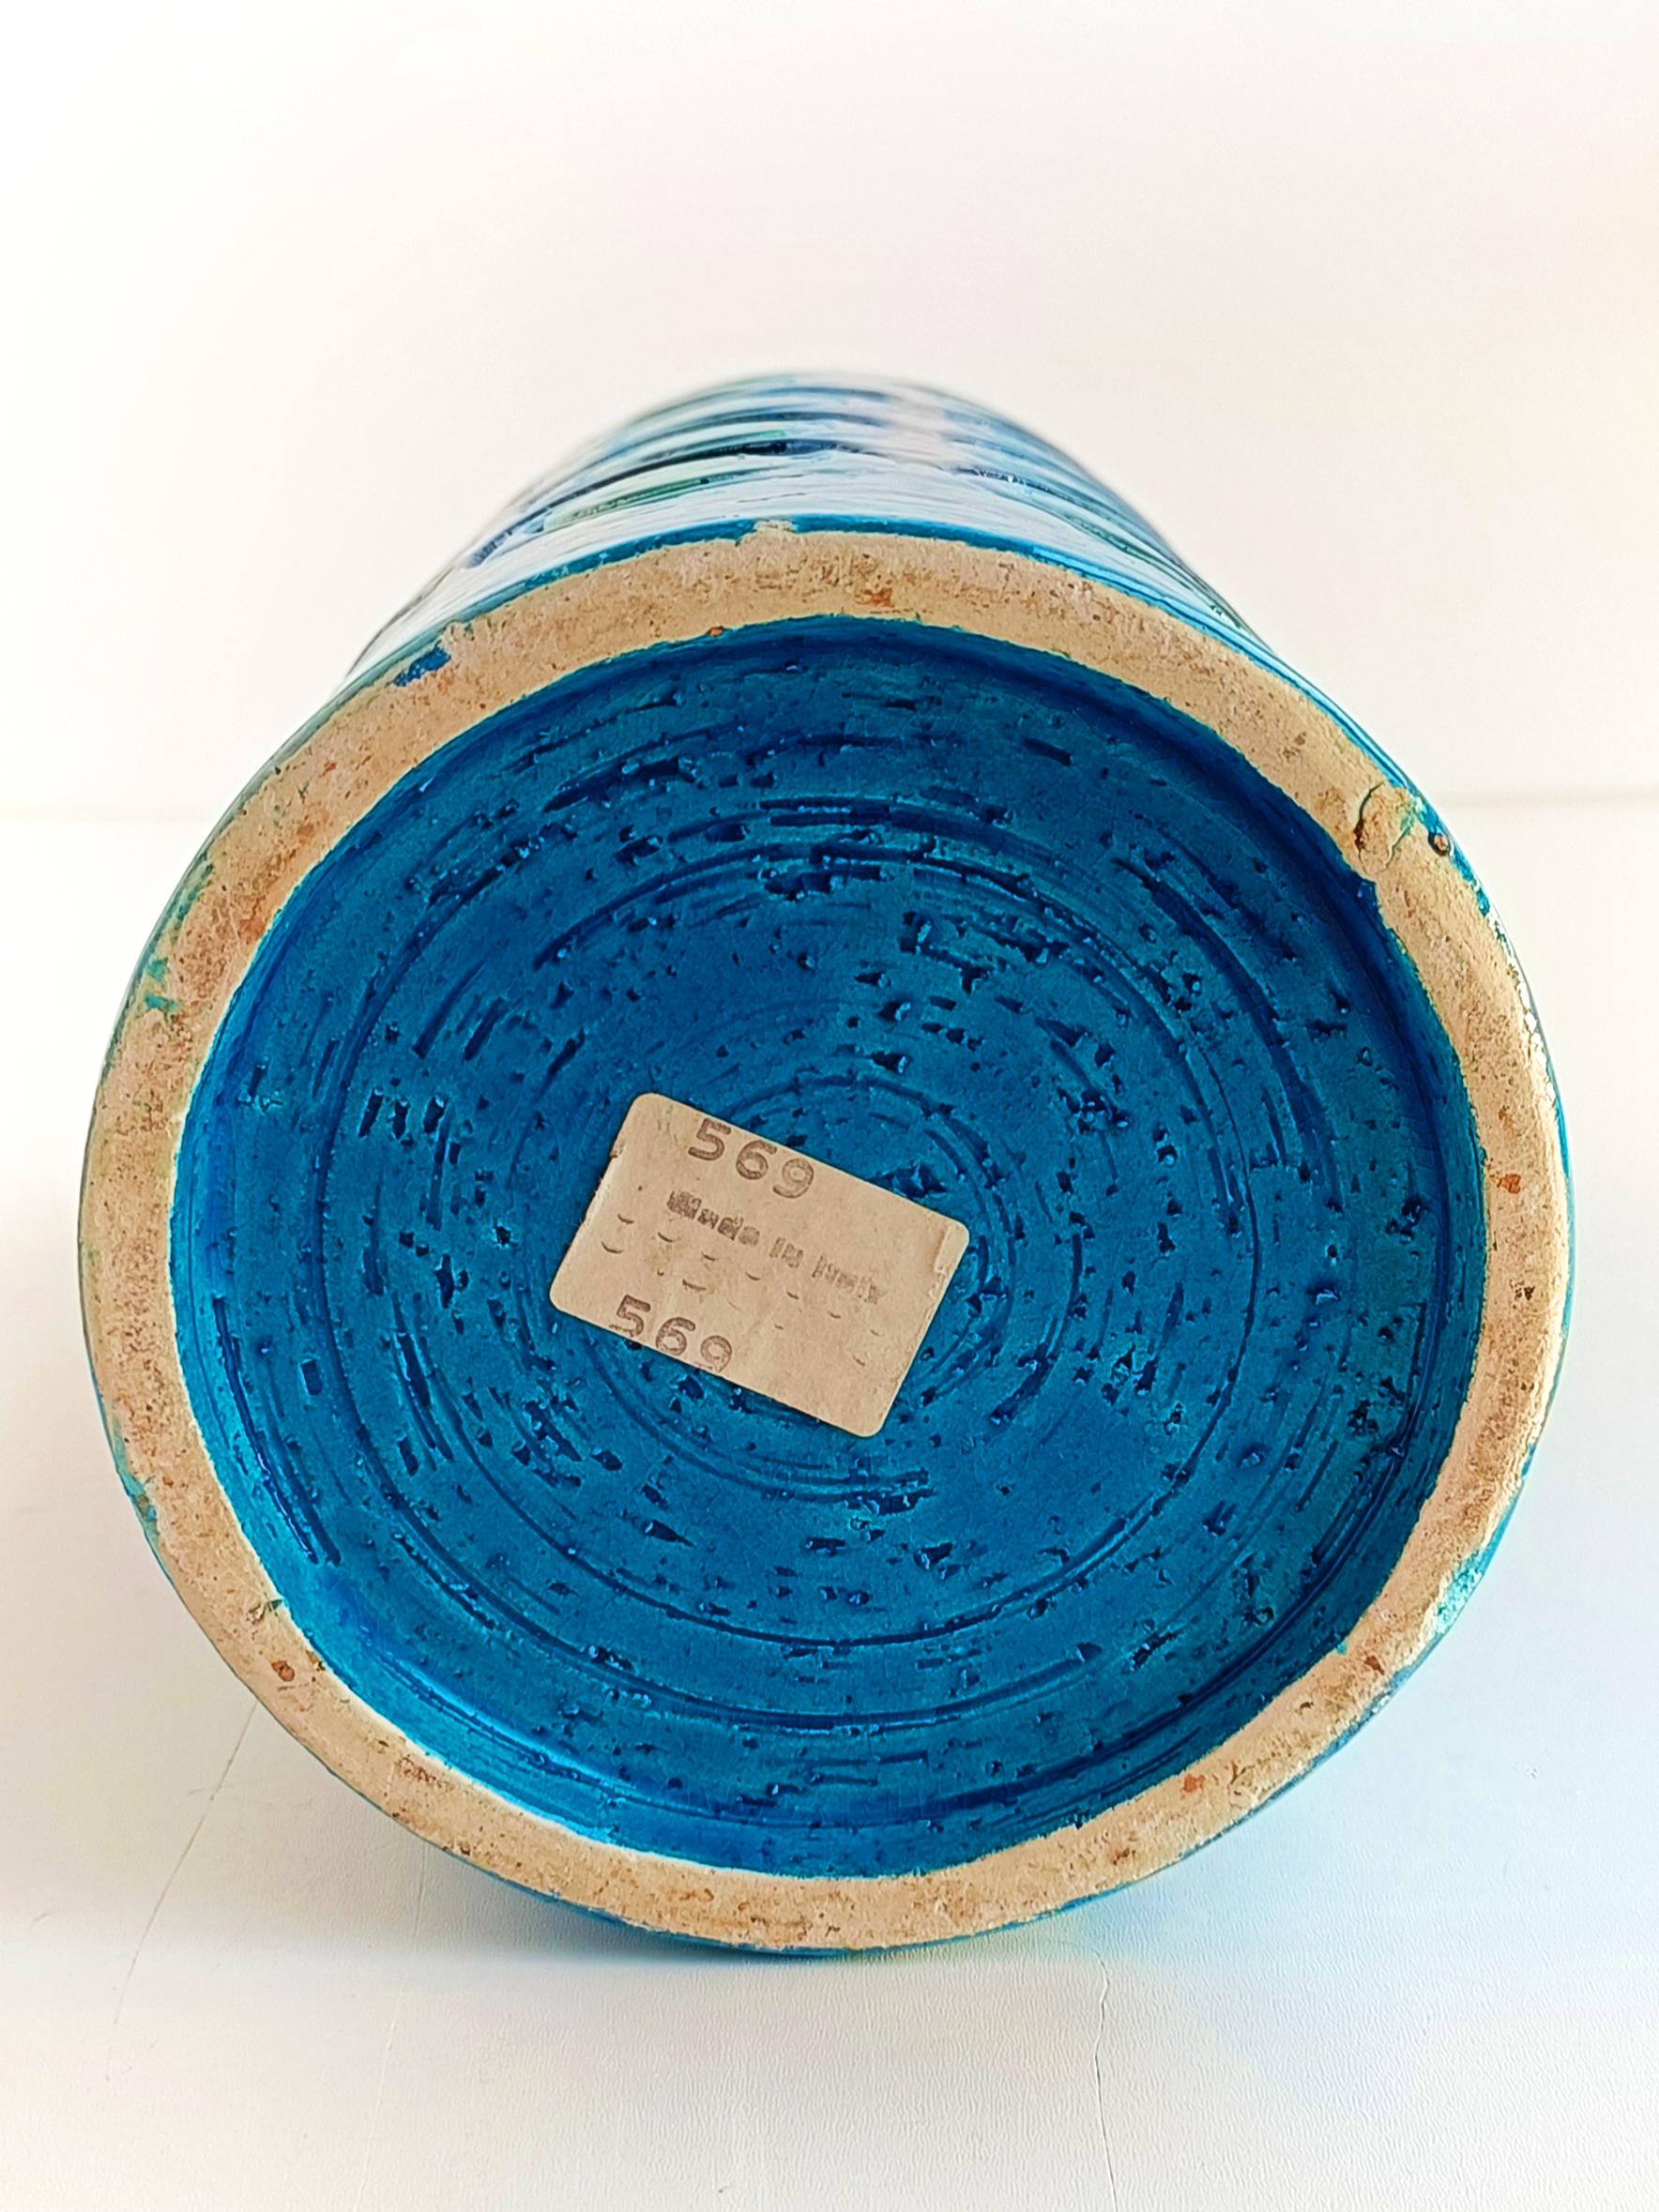 Bitossi by Aldo Londi Ikano Decor Rimini Blu Ceramic Vase, Italy, 1960s 1